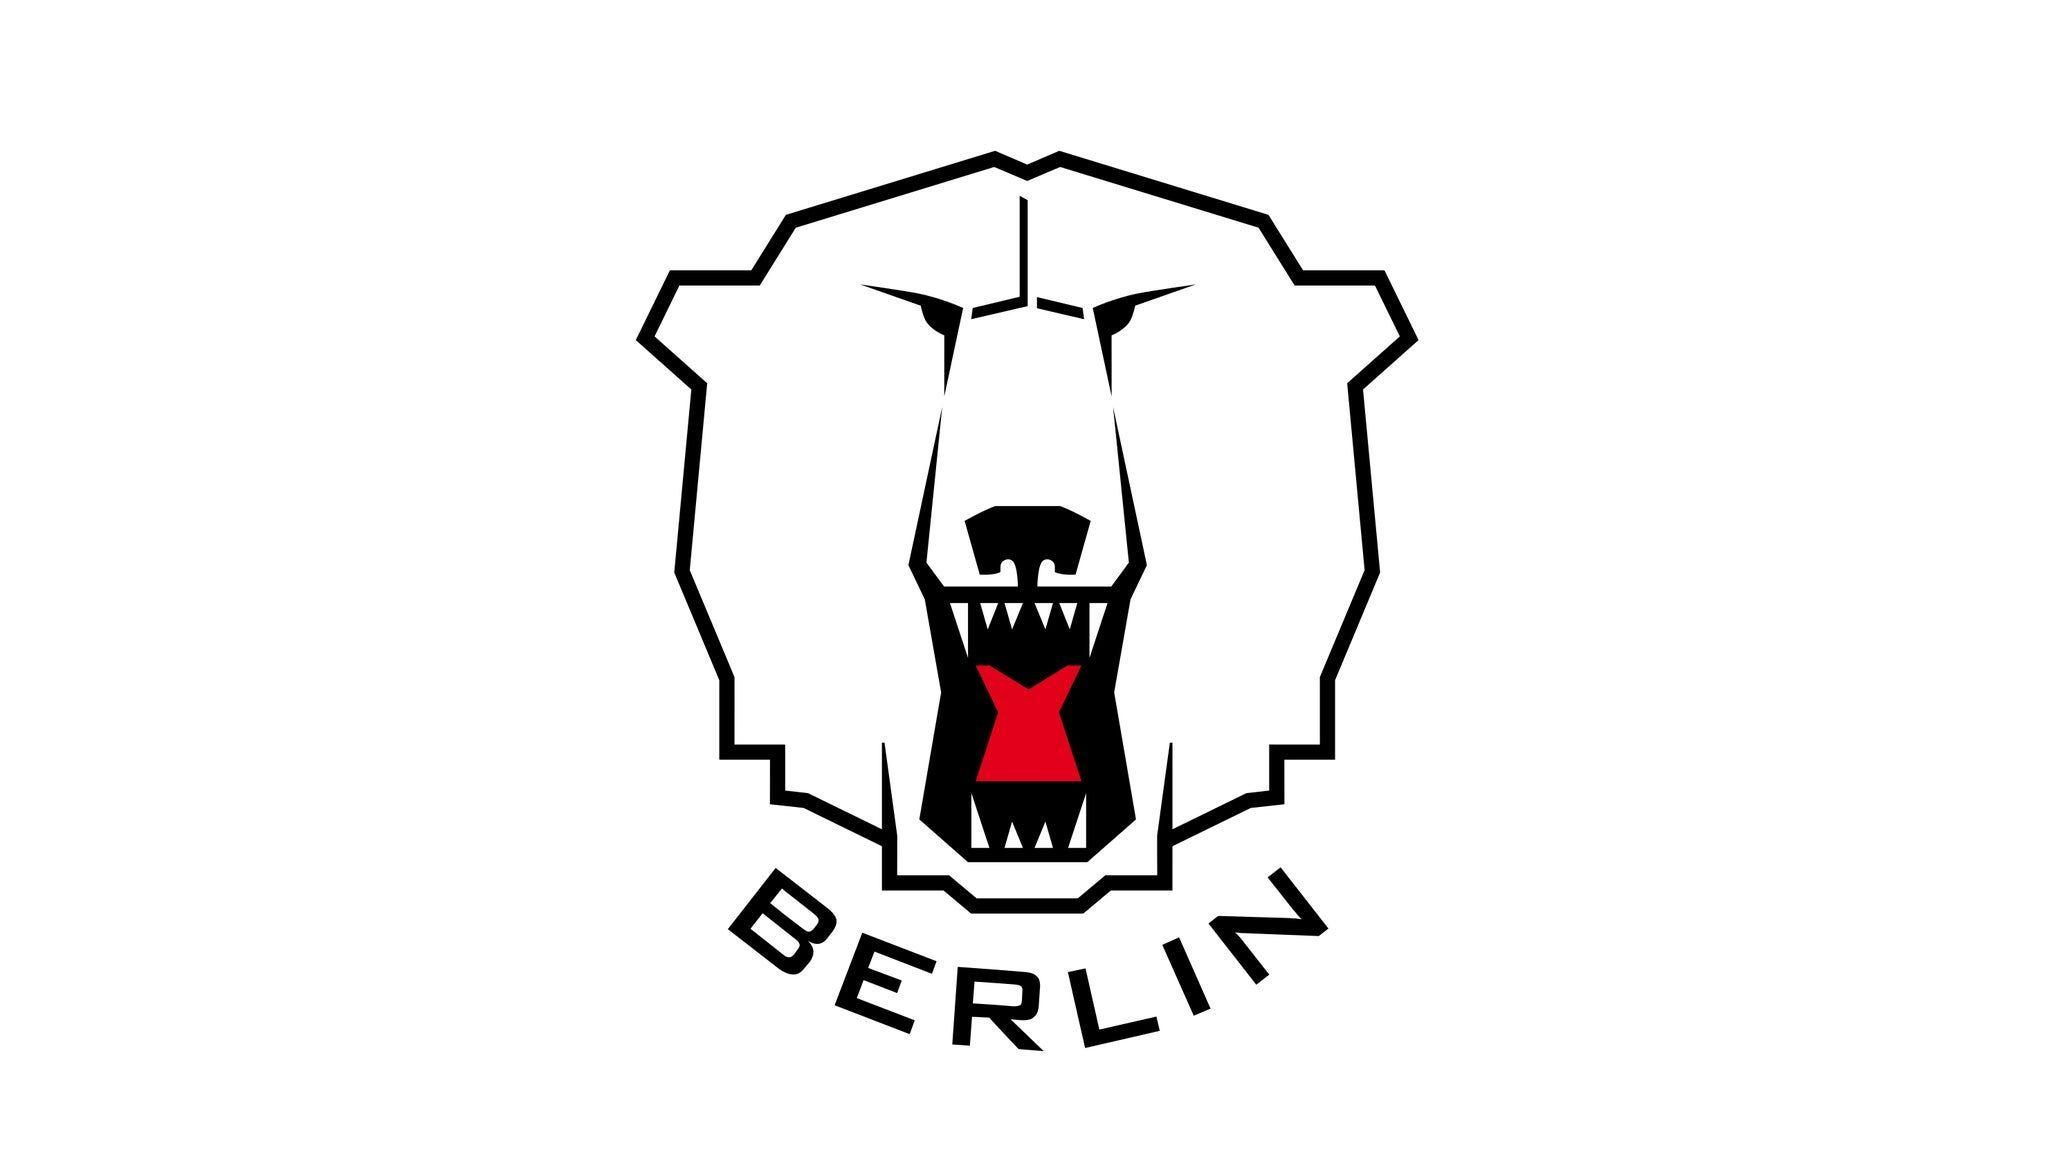 Eisbaren Berlin